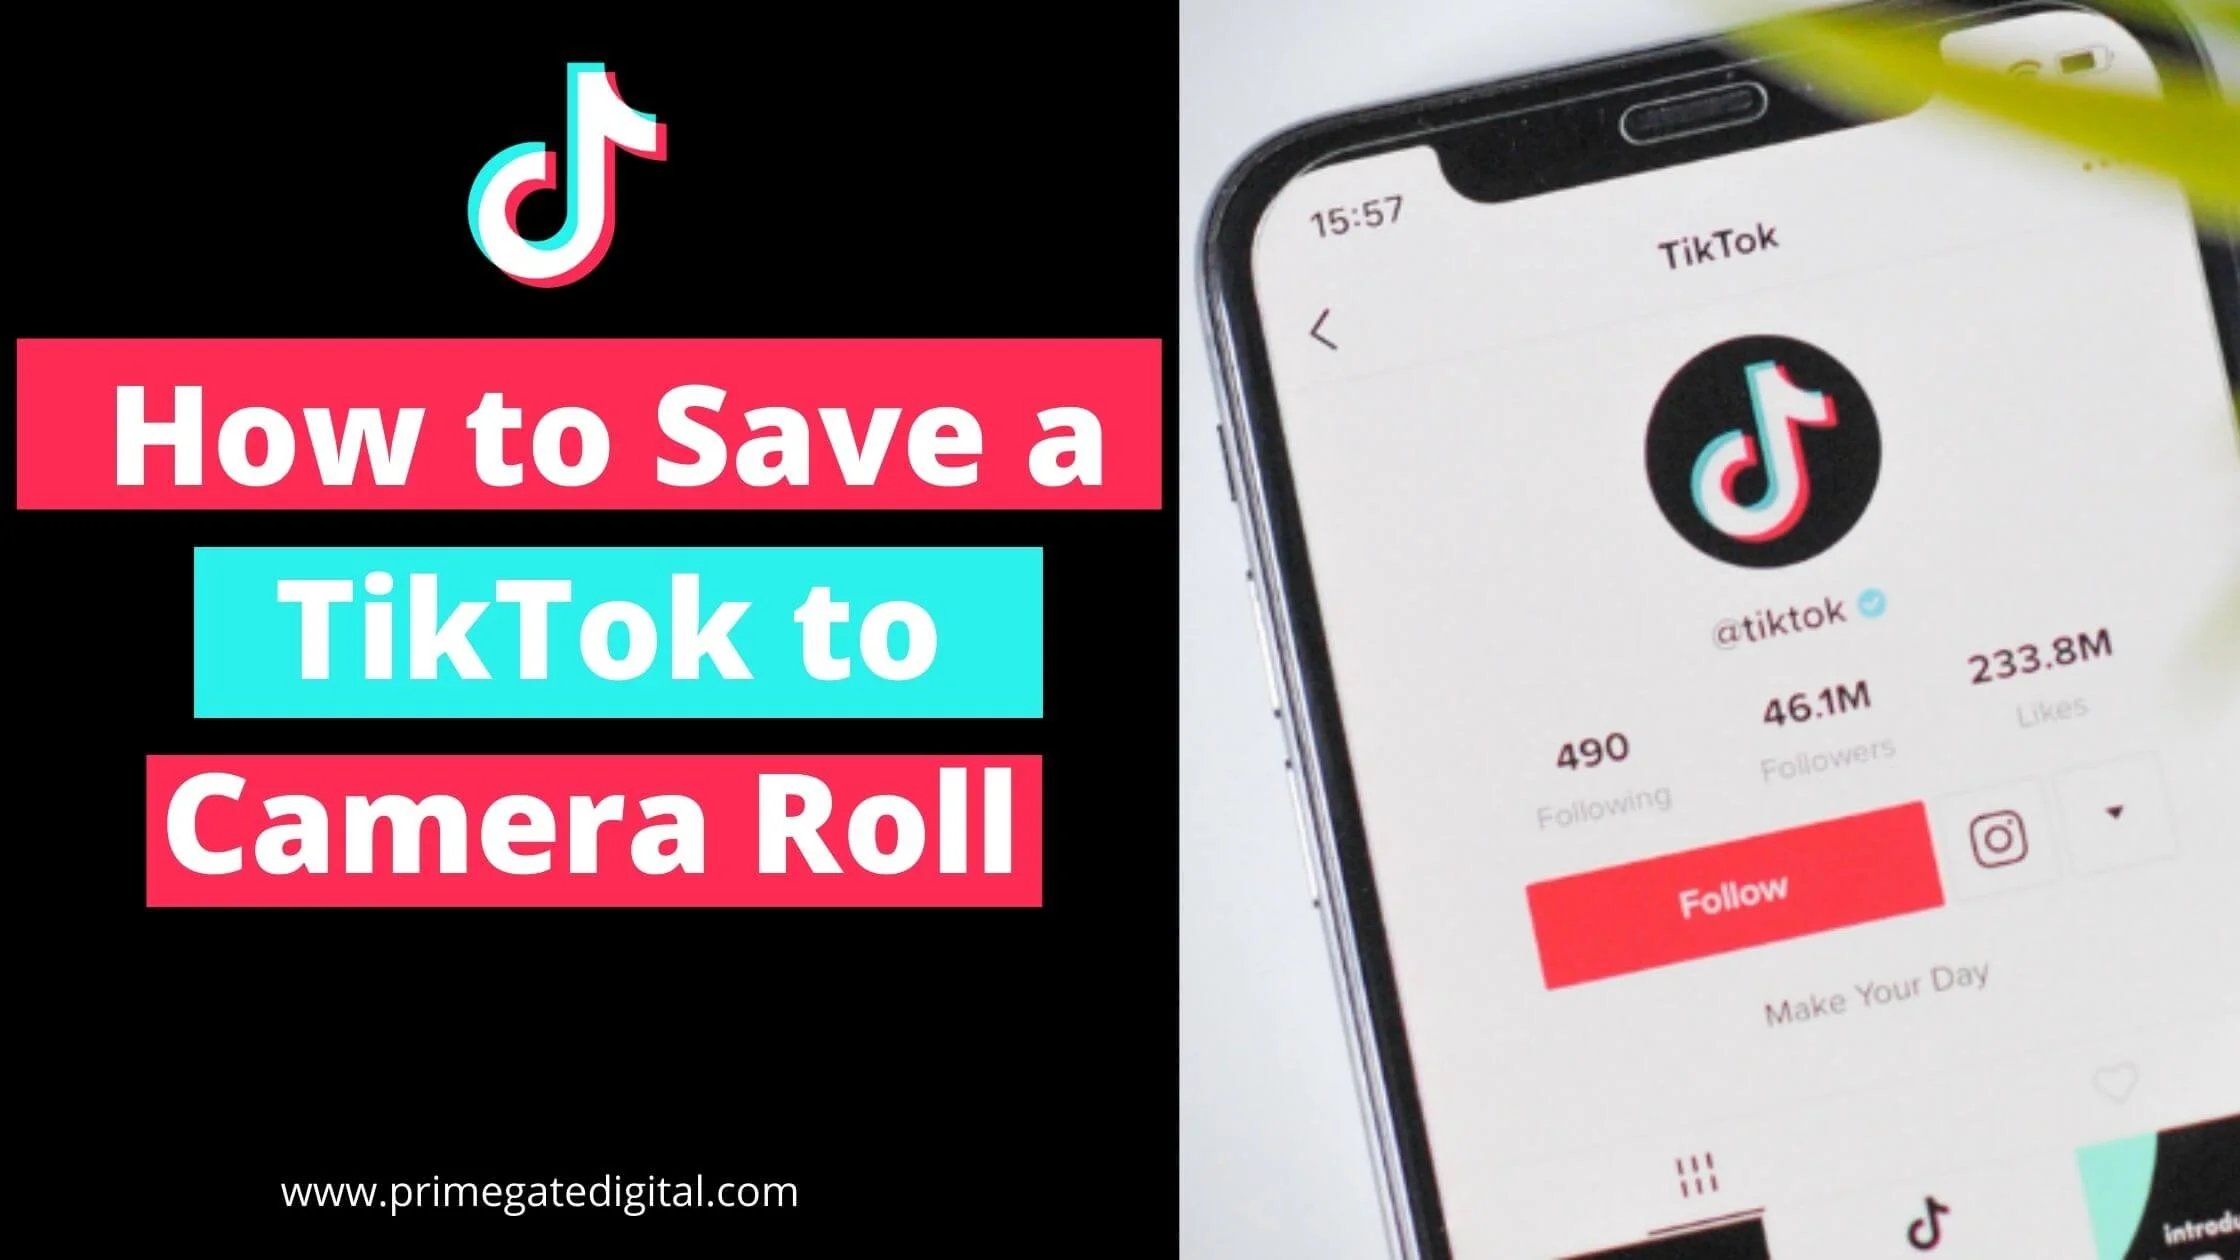 Save a TikTok to Camera Roll